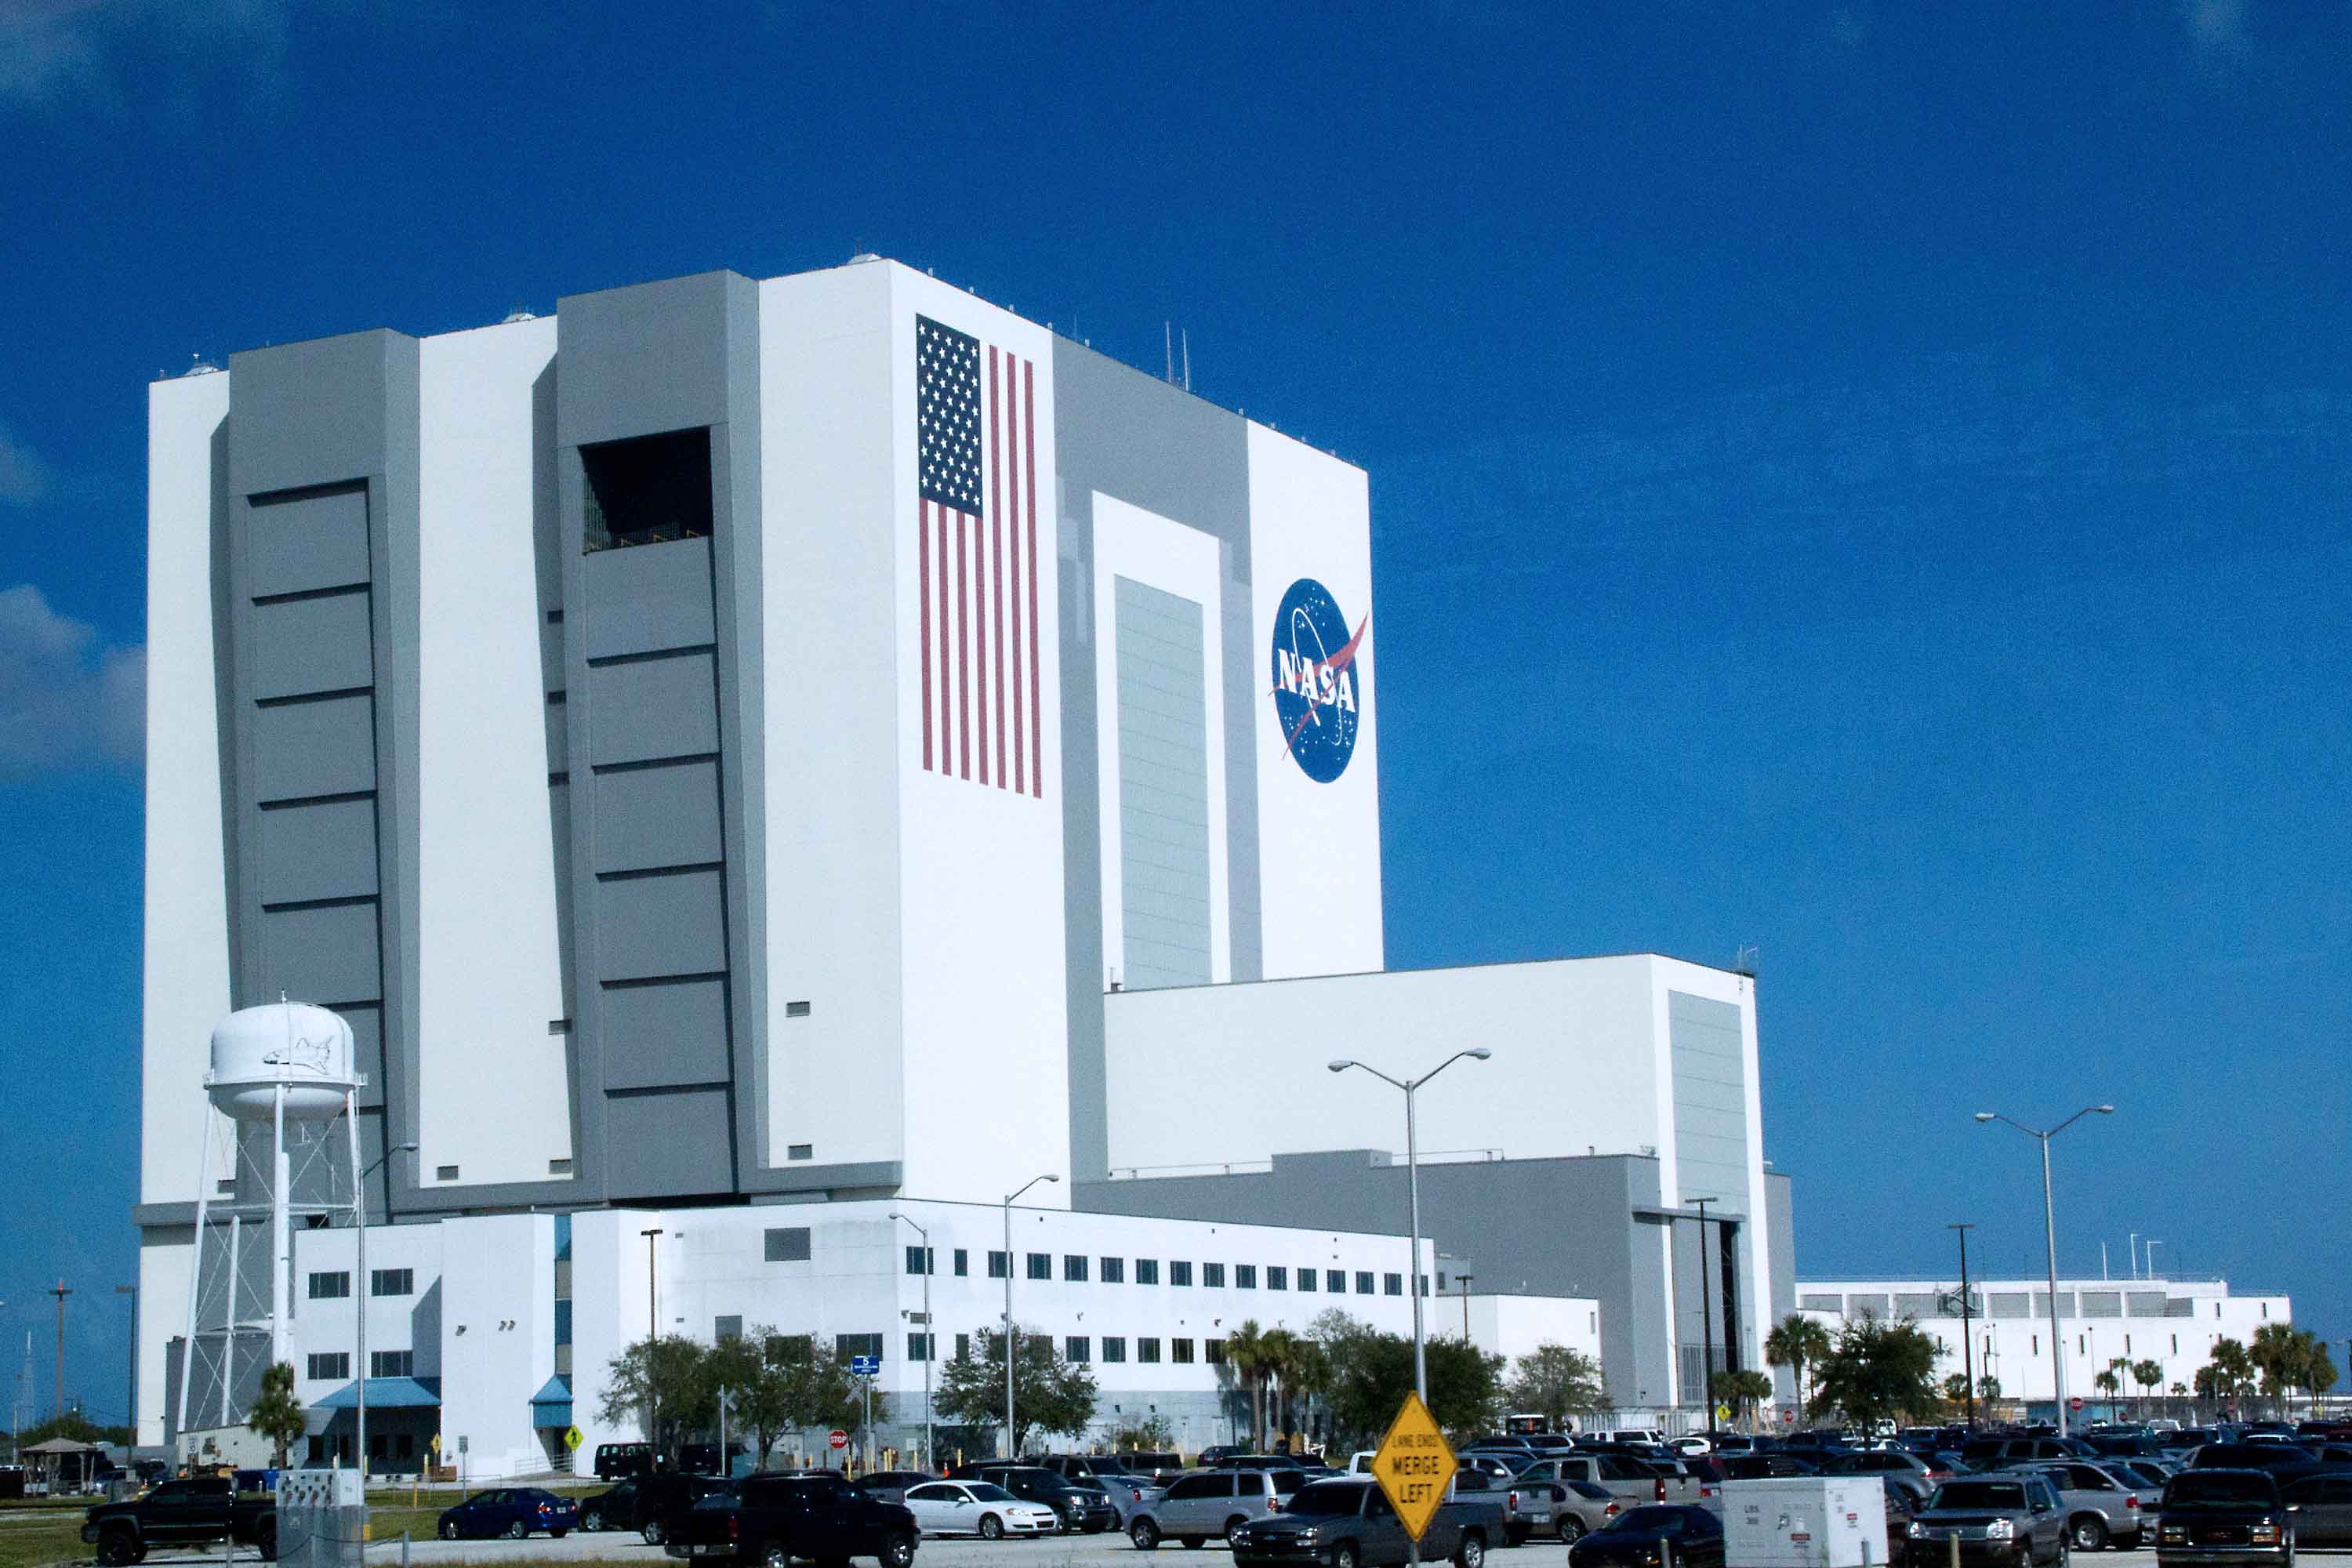 Наса город. Здание вертикальной сборки НАСА. Штаб квартира НАСА. Космический центр управления полетами имени Джона Кеннеди во Флориде. Здание НАСА штат Калифорния.